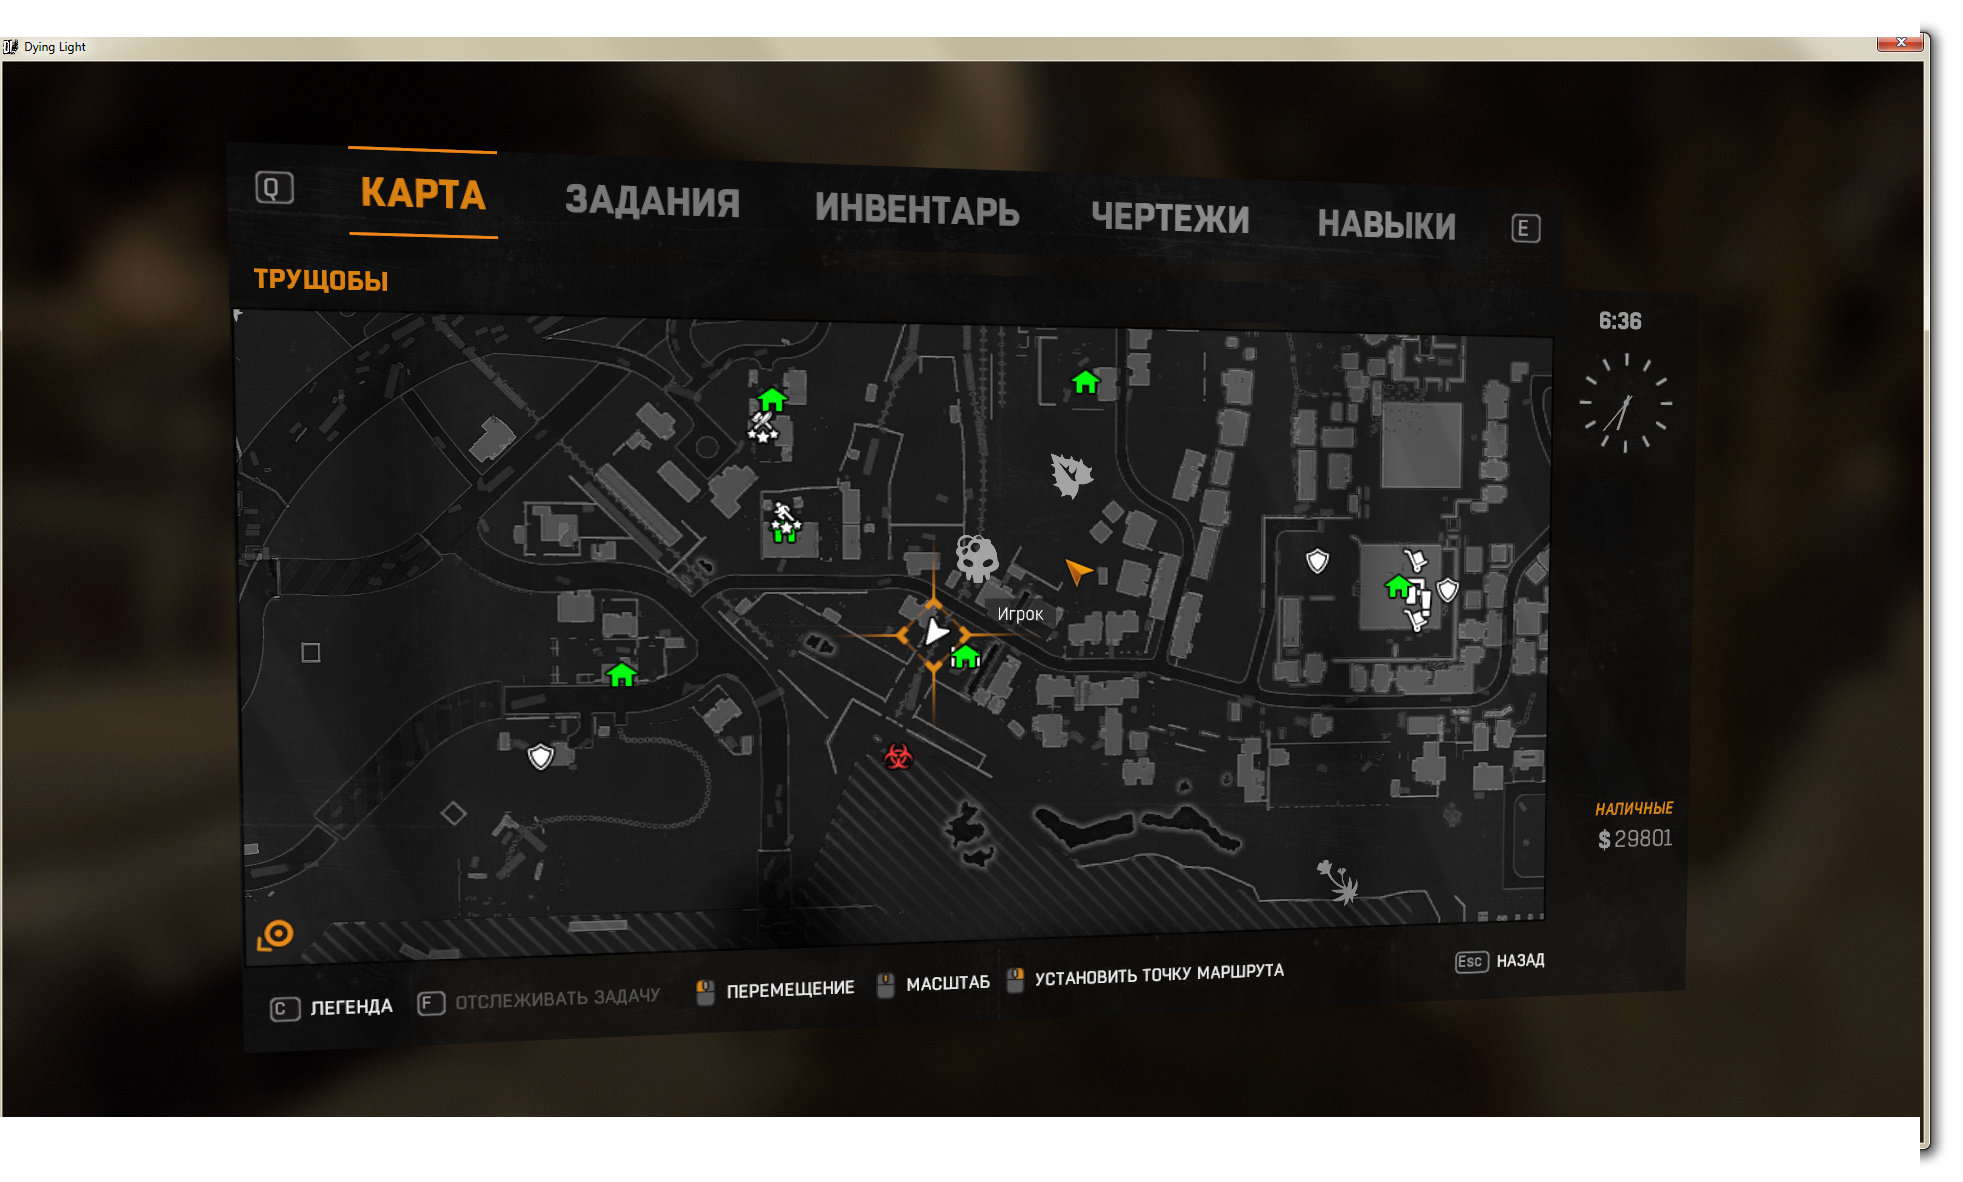 Ли дай лайт. Dying Light 2 карта. Dying Light лаборатория Камдена. Лаборатория Камдена Dying Light на карте. Локация даинг Лайт 2.